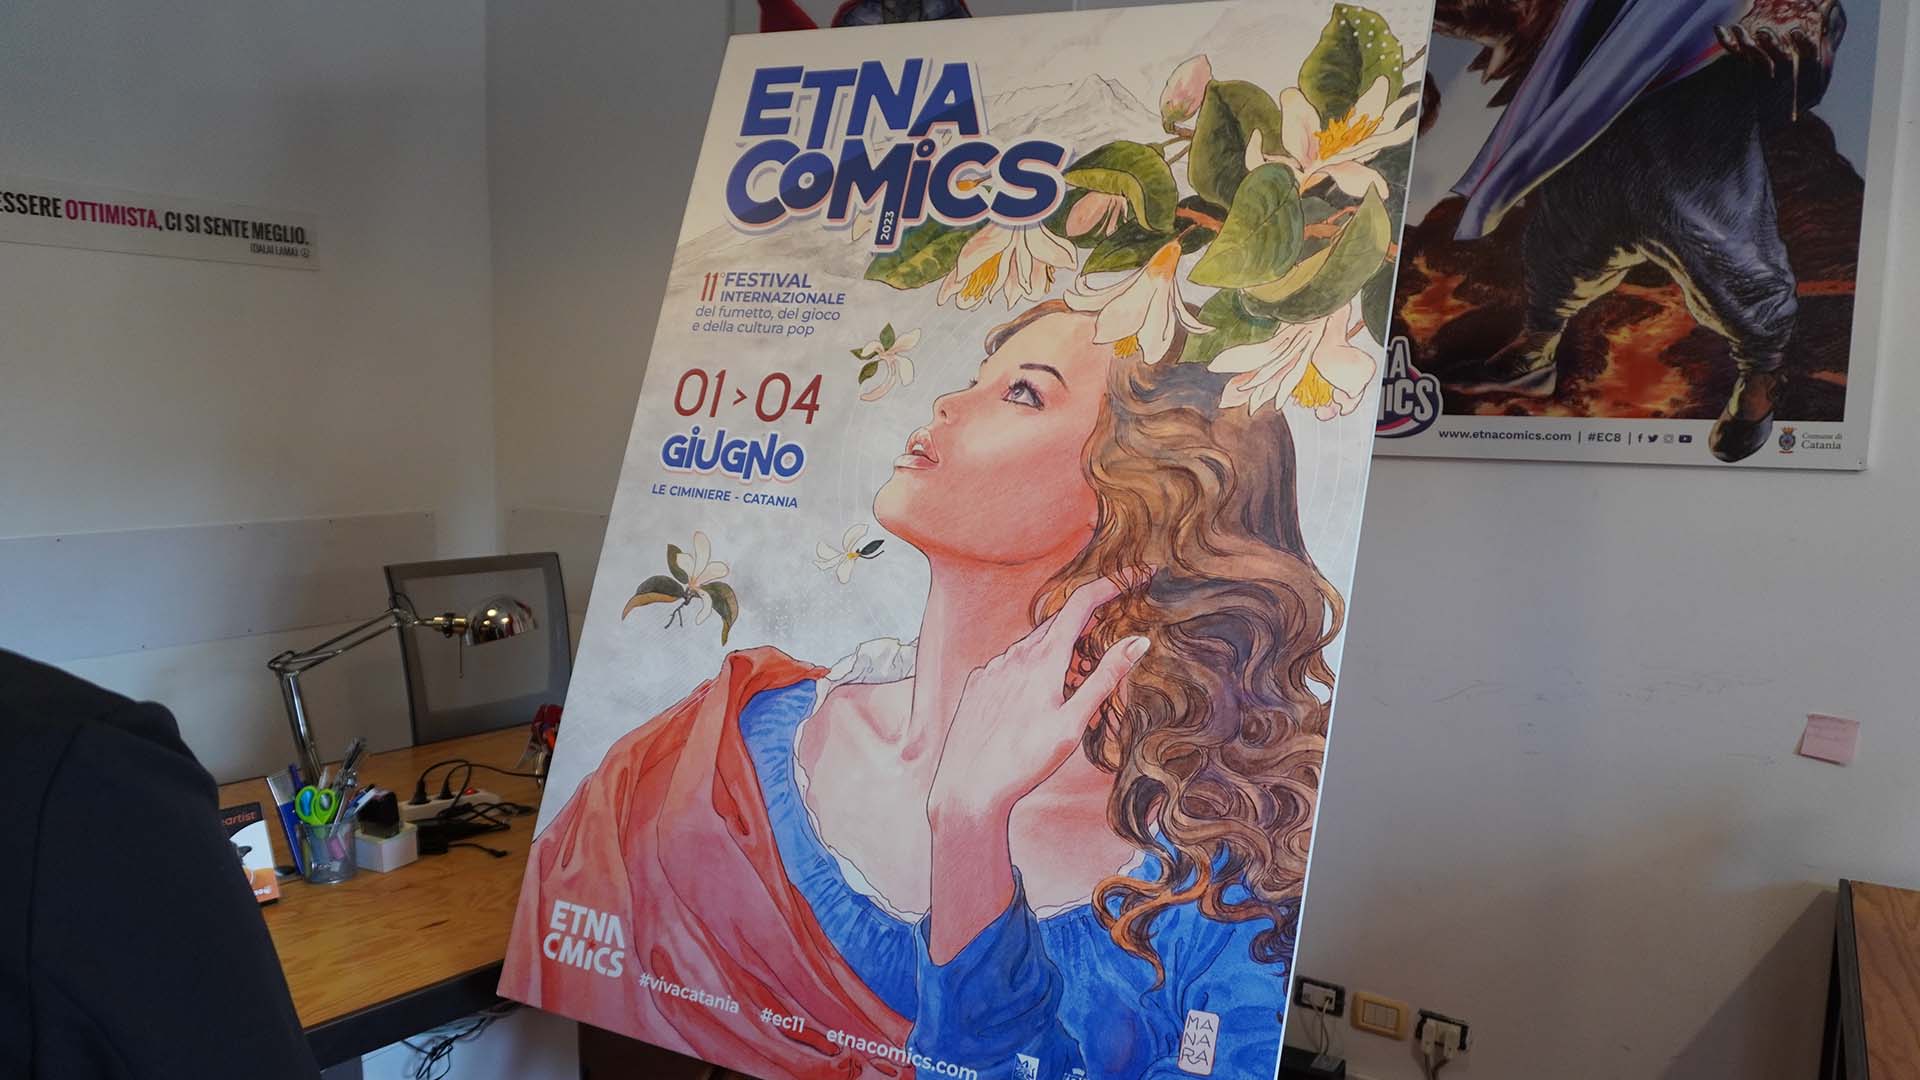 Etna Comics 2023, ecco il manifesto di Milo Manara: "lo sguardo rivolto al cielo e una bellezza eterea, pura e immortale"